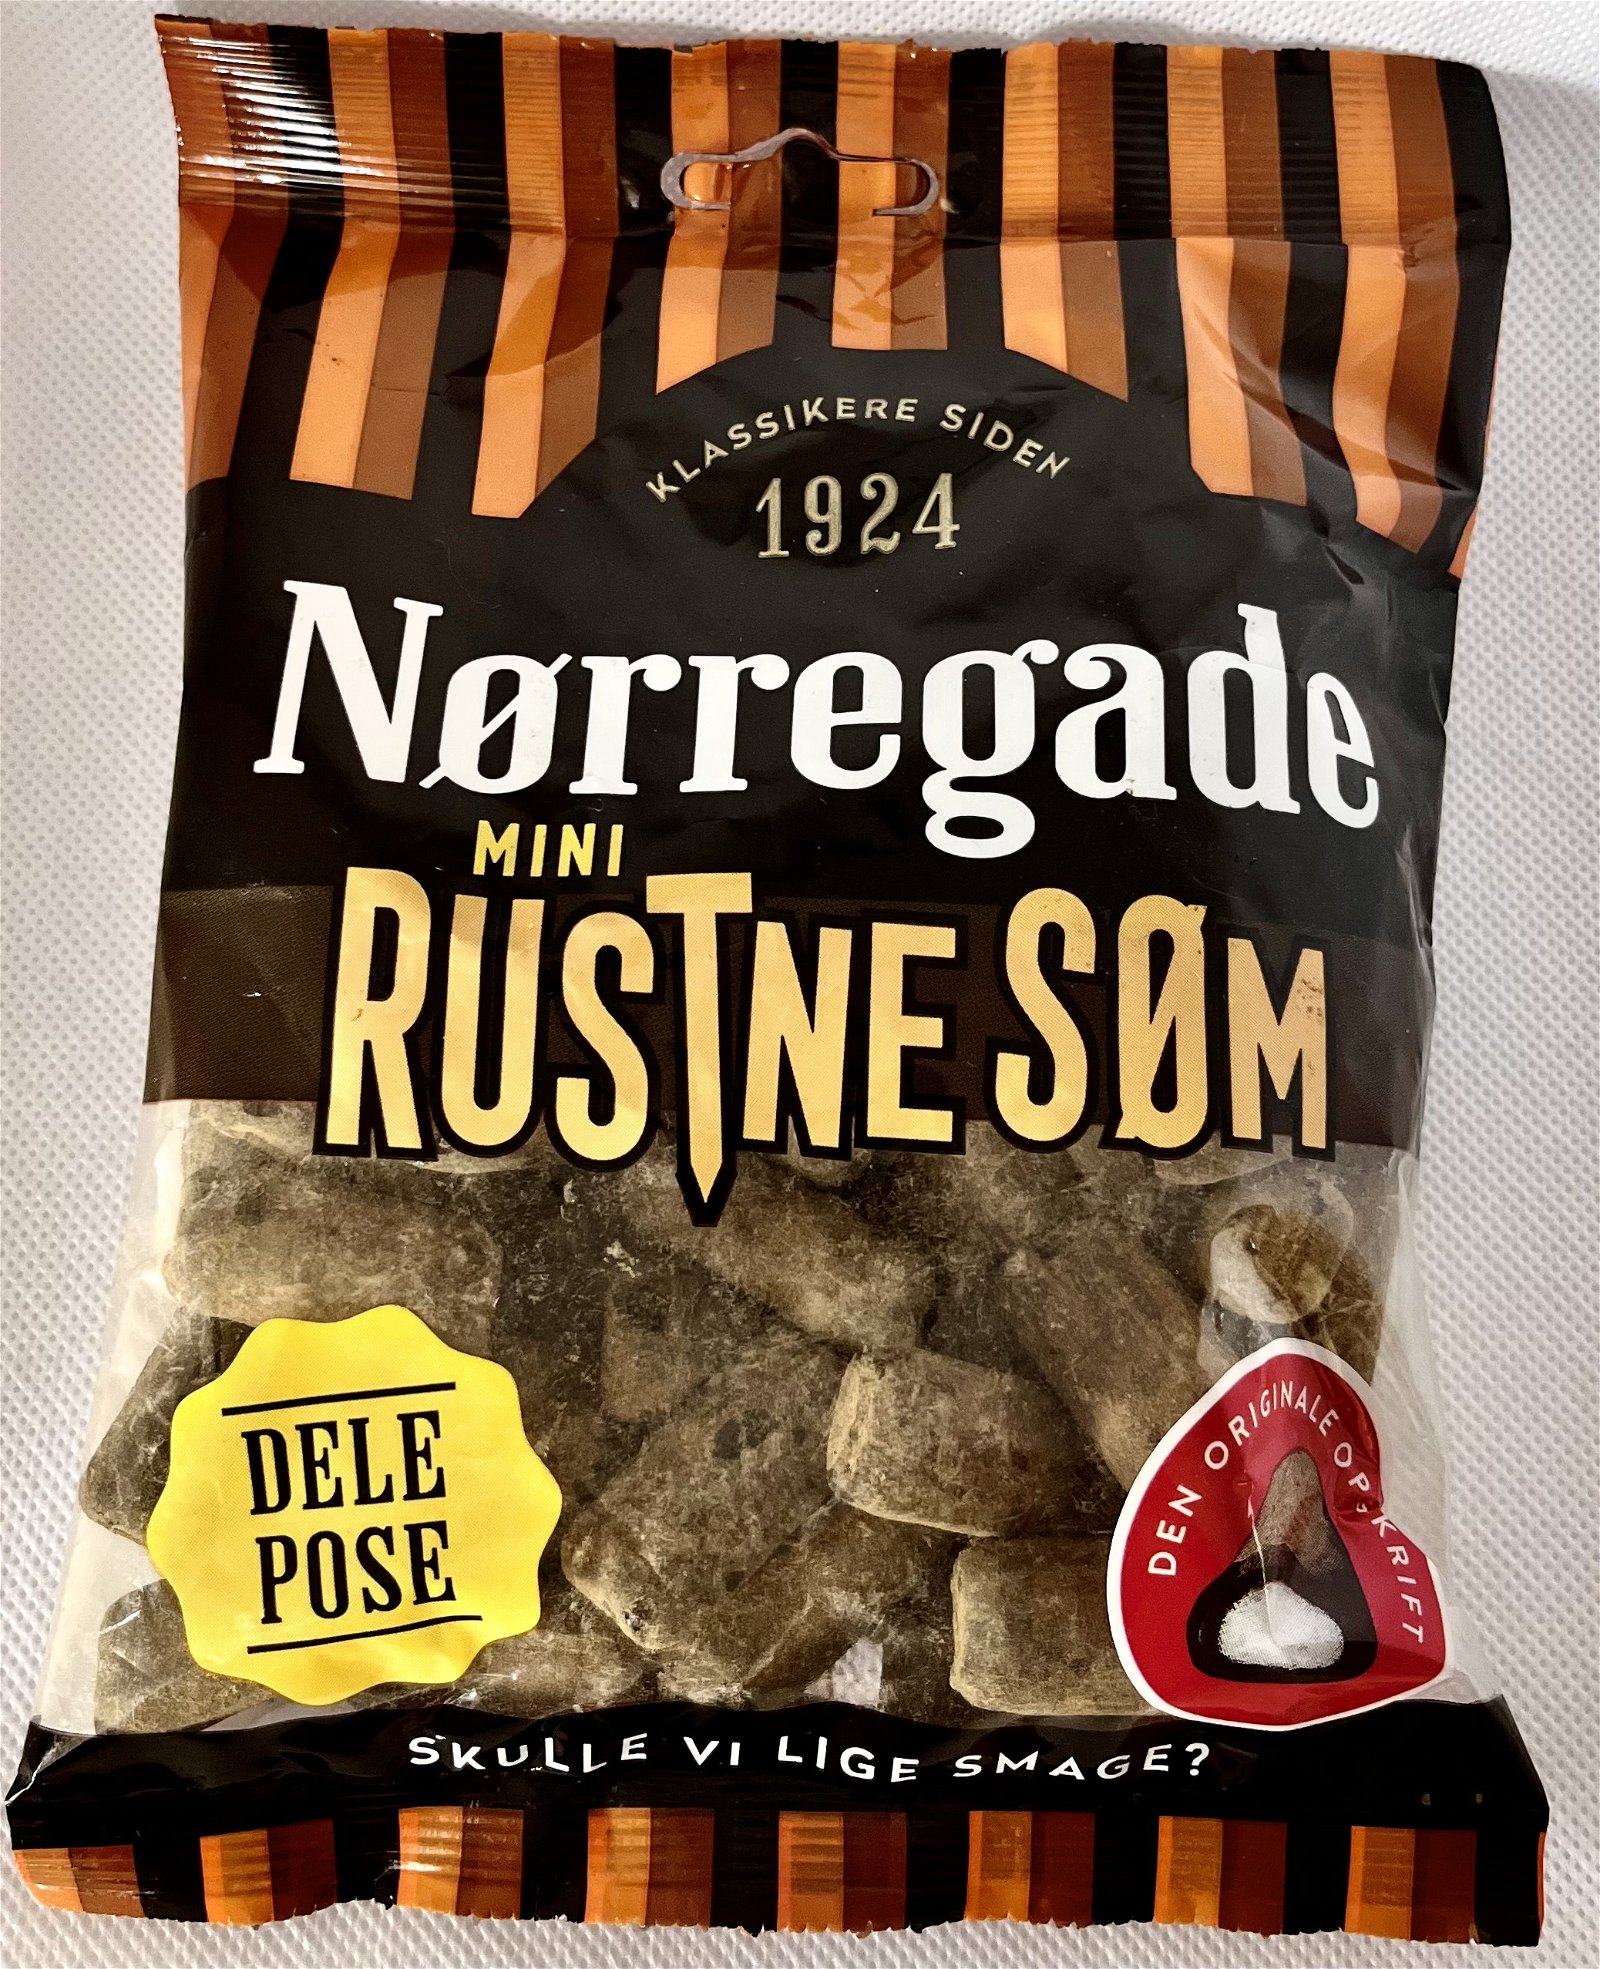 Nørregade Rustne Søm, 270g